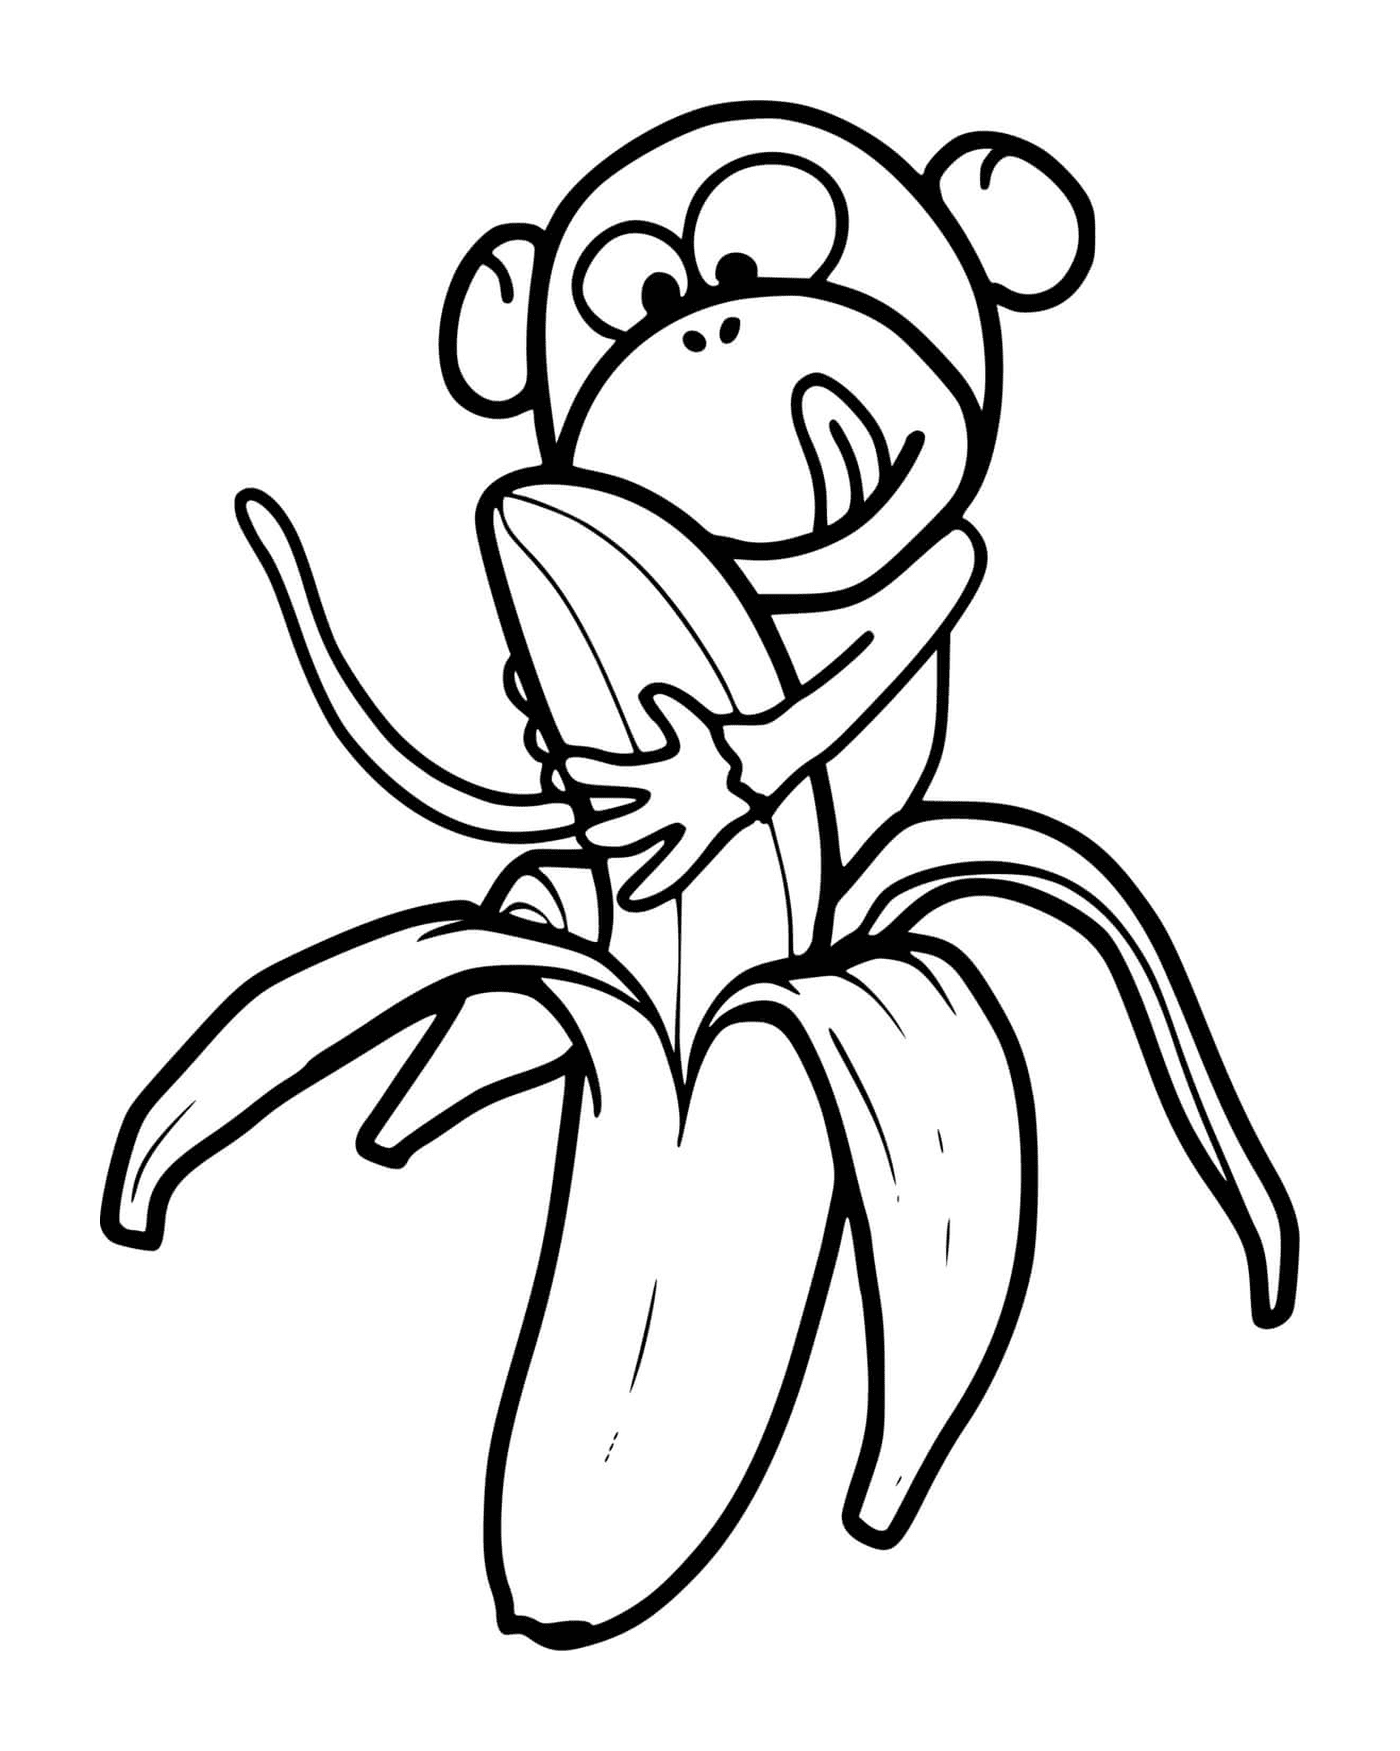  Una scimmia mangia una banana 